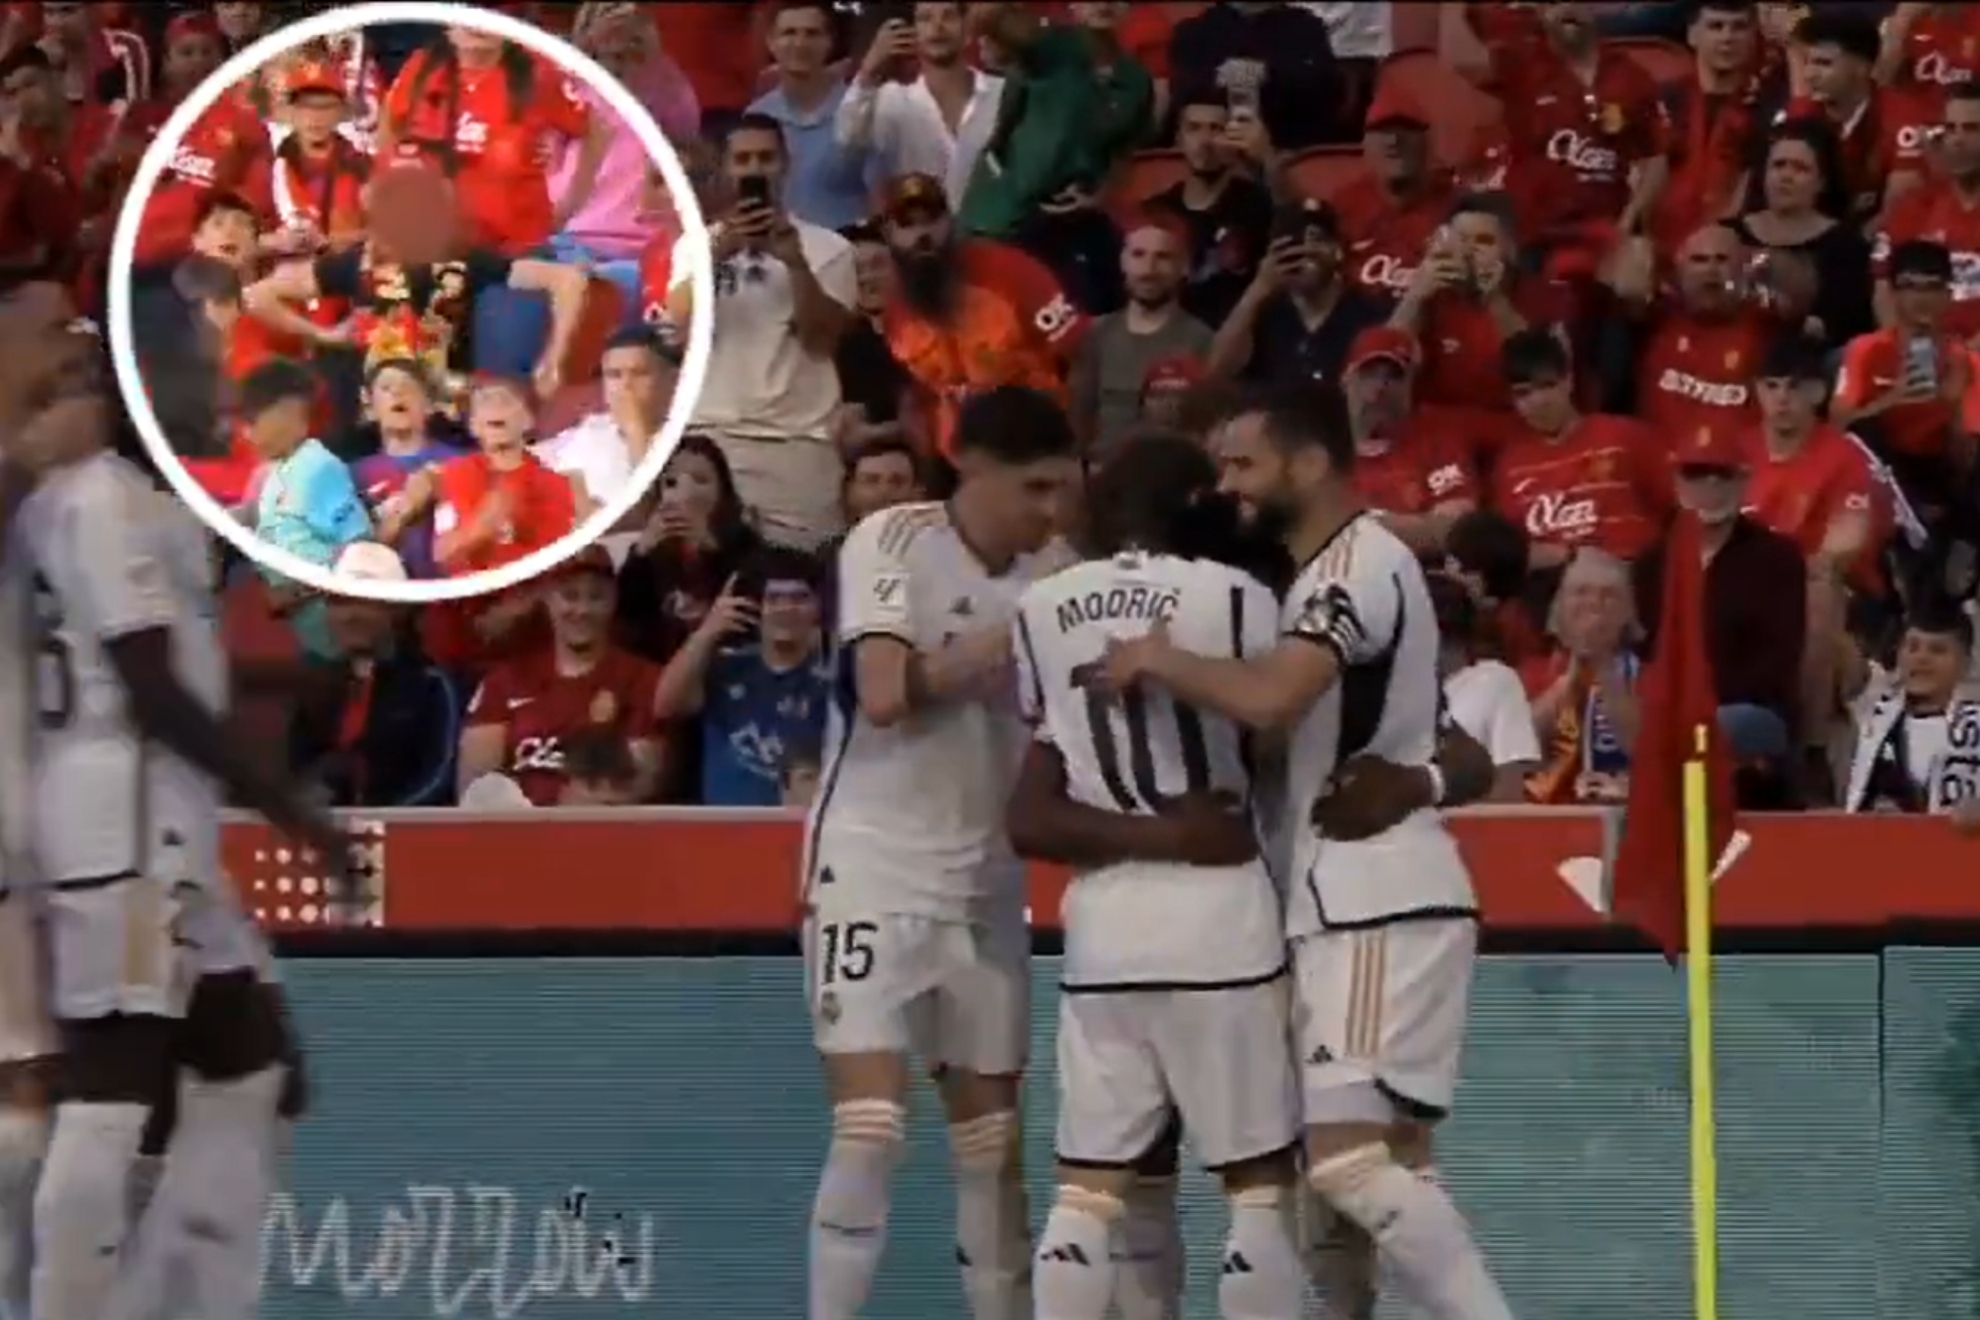 Nuevo gesto racista en Mallorca: gestos de mono durante la celebraci�n del gol de Tchouam�ni